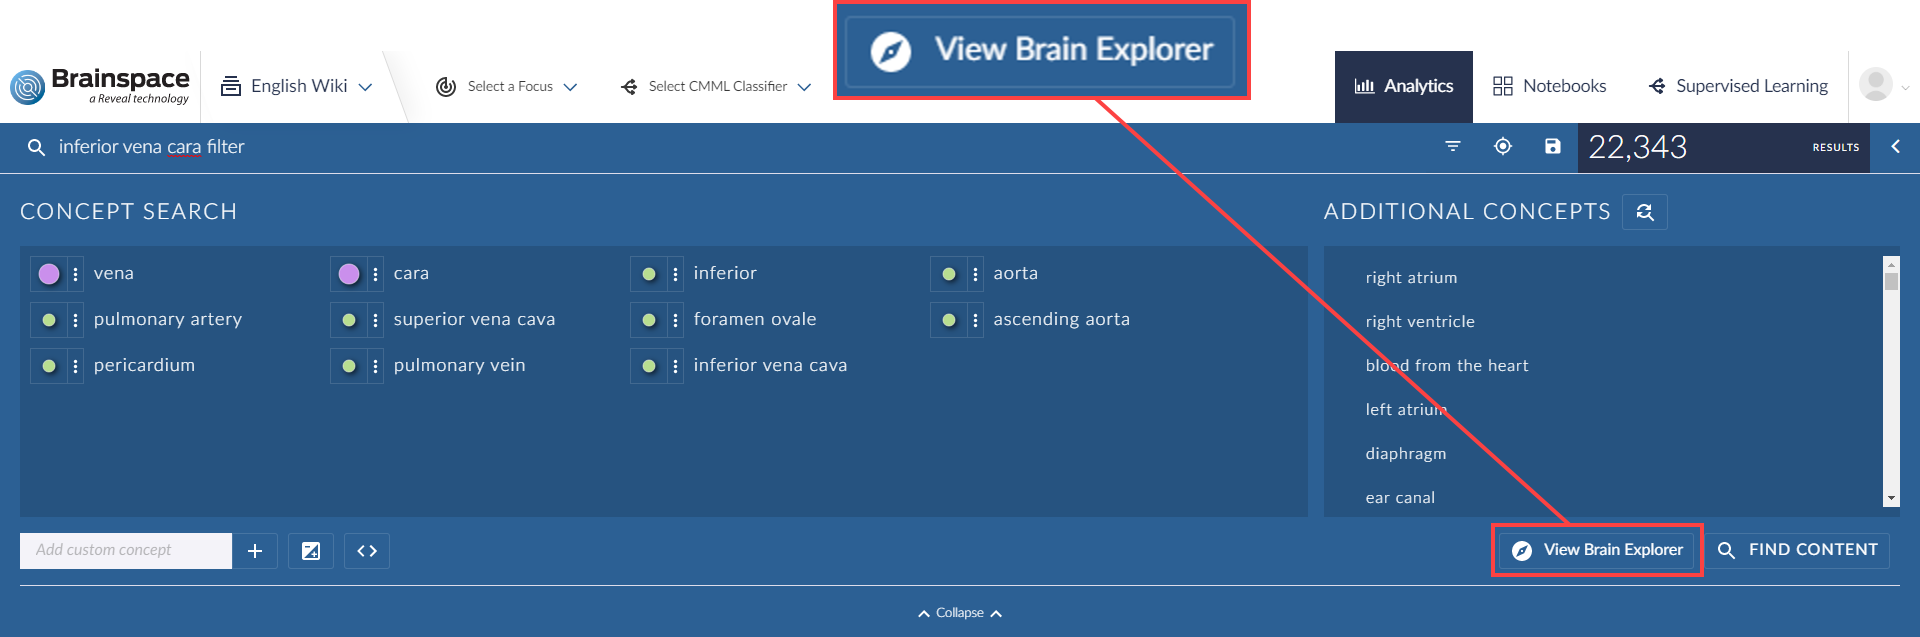 go to brain explorer 2